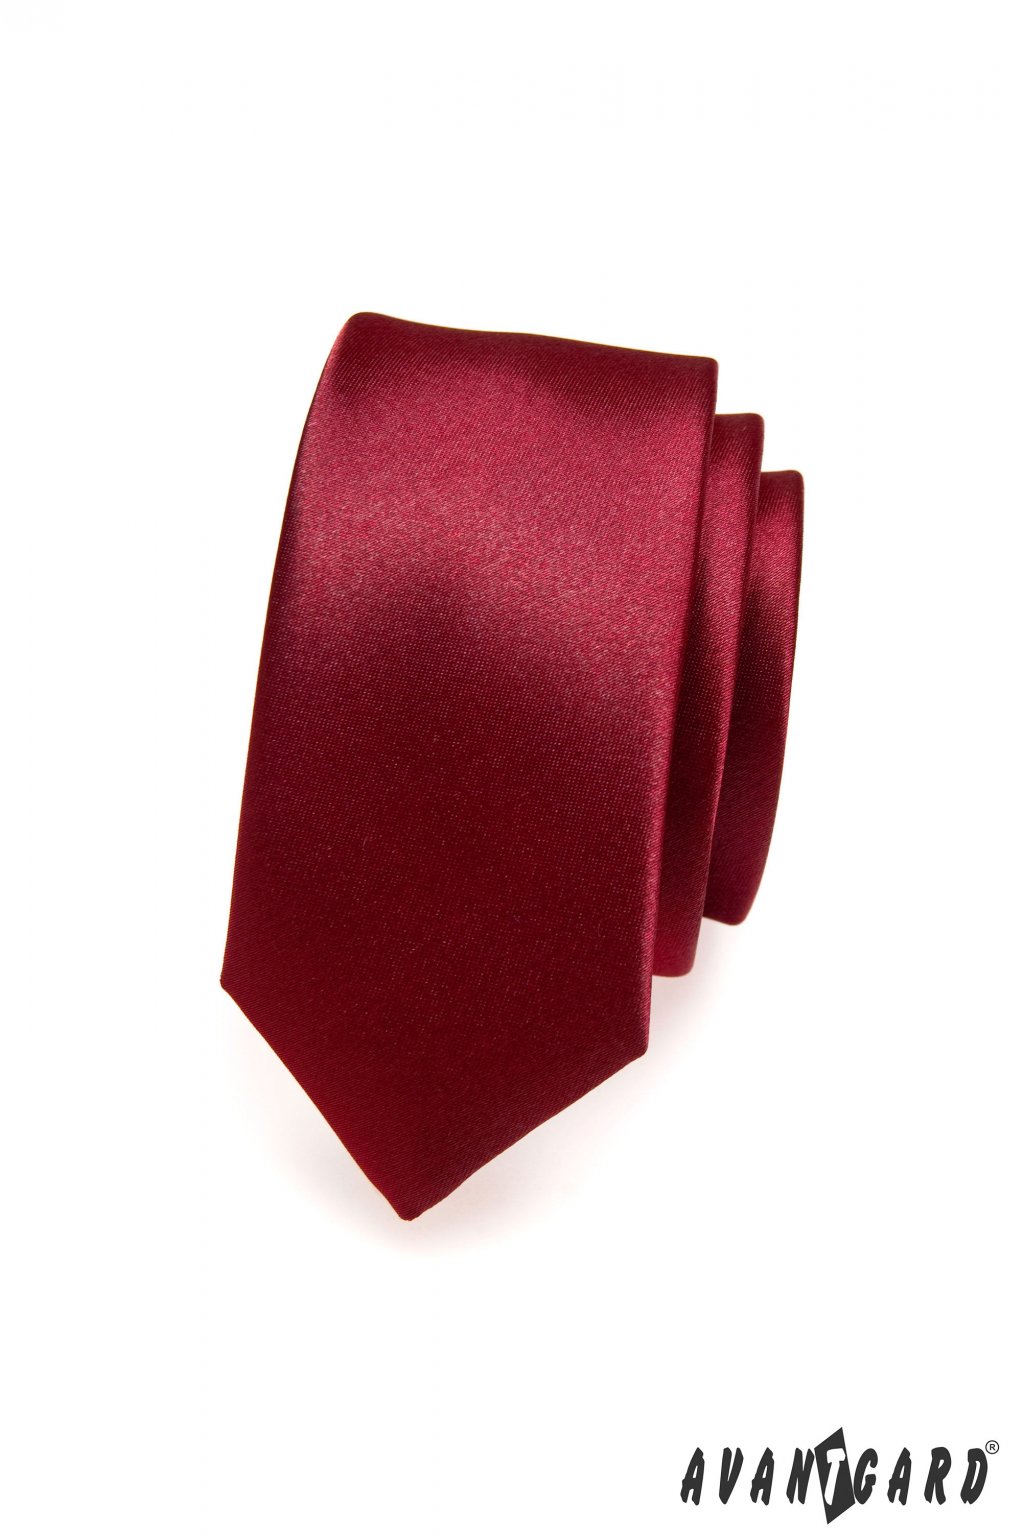 Pánská luxusní kravata SLIM bordó 571 - 9022